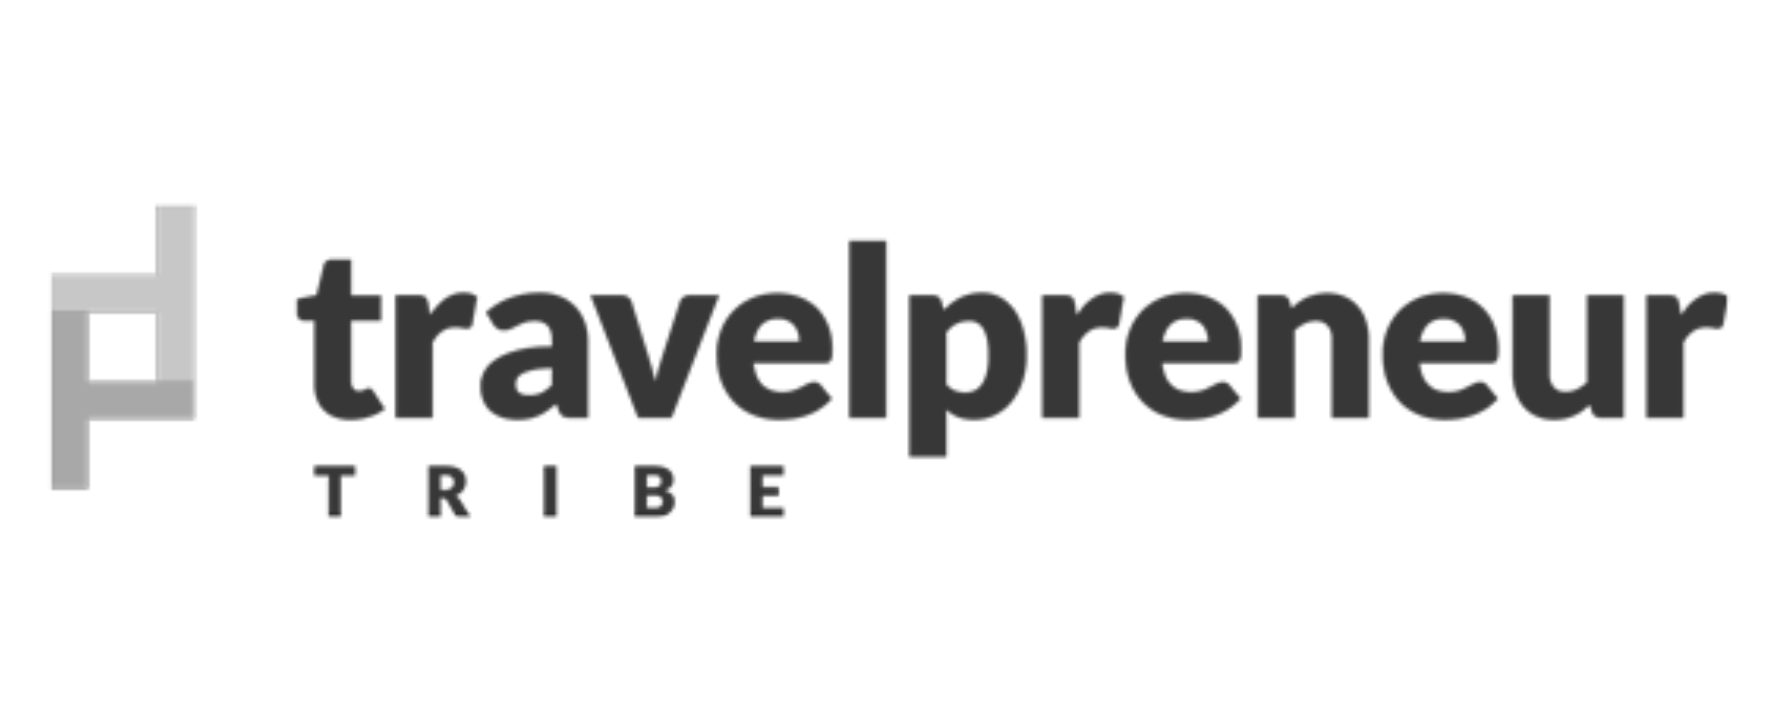 Travelpreneur logo